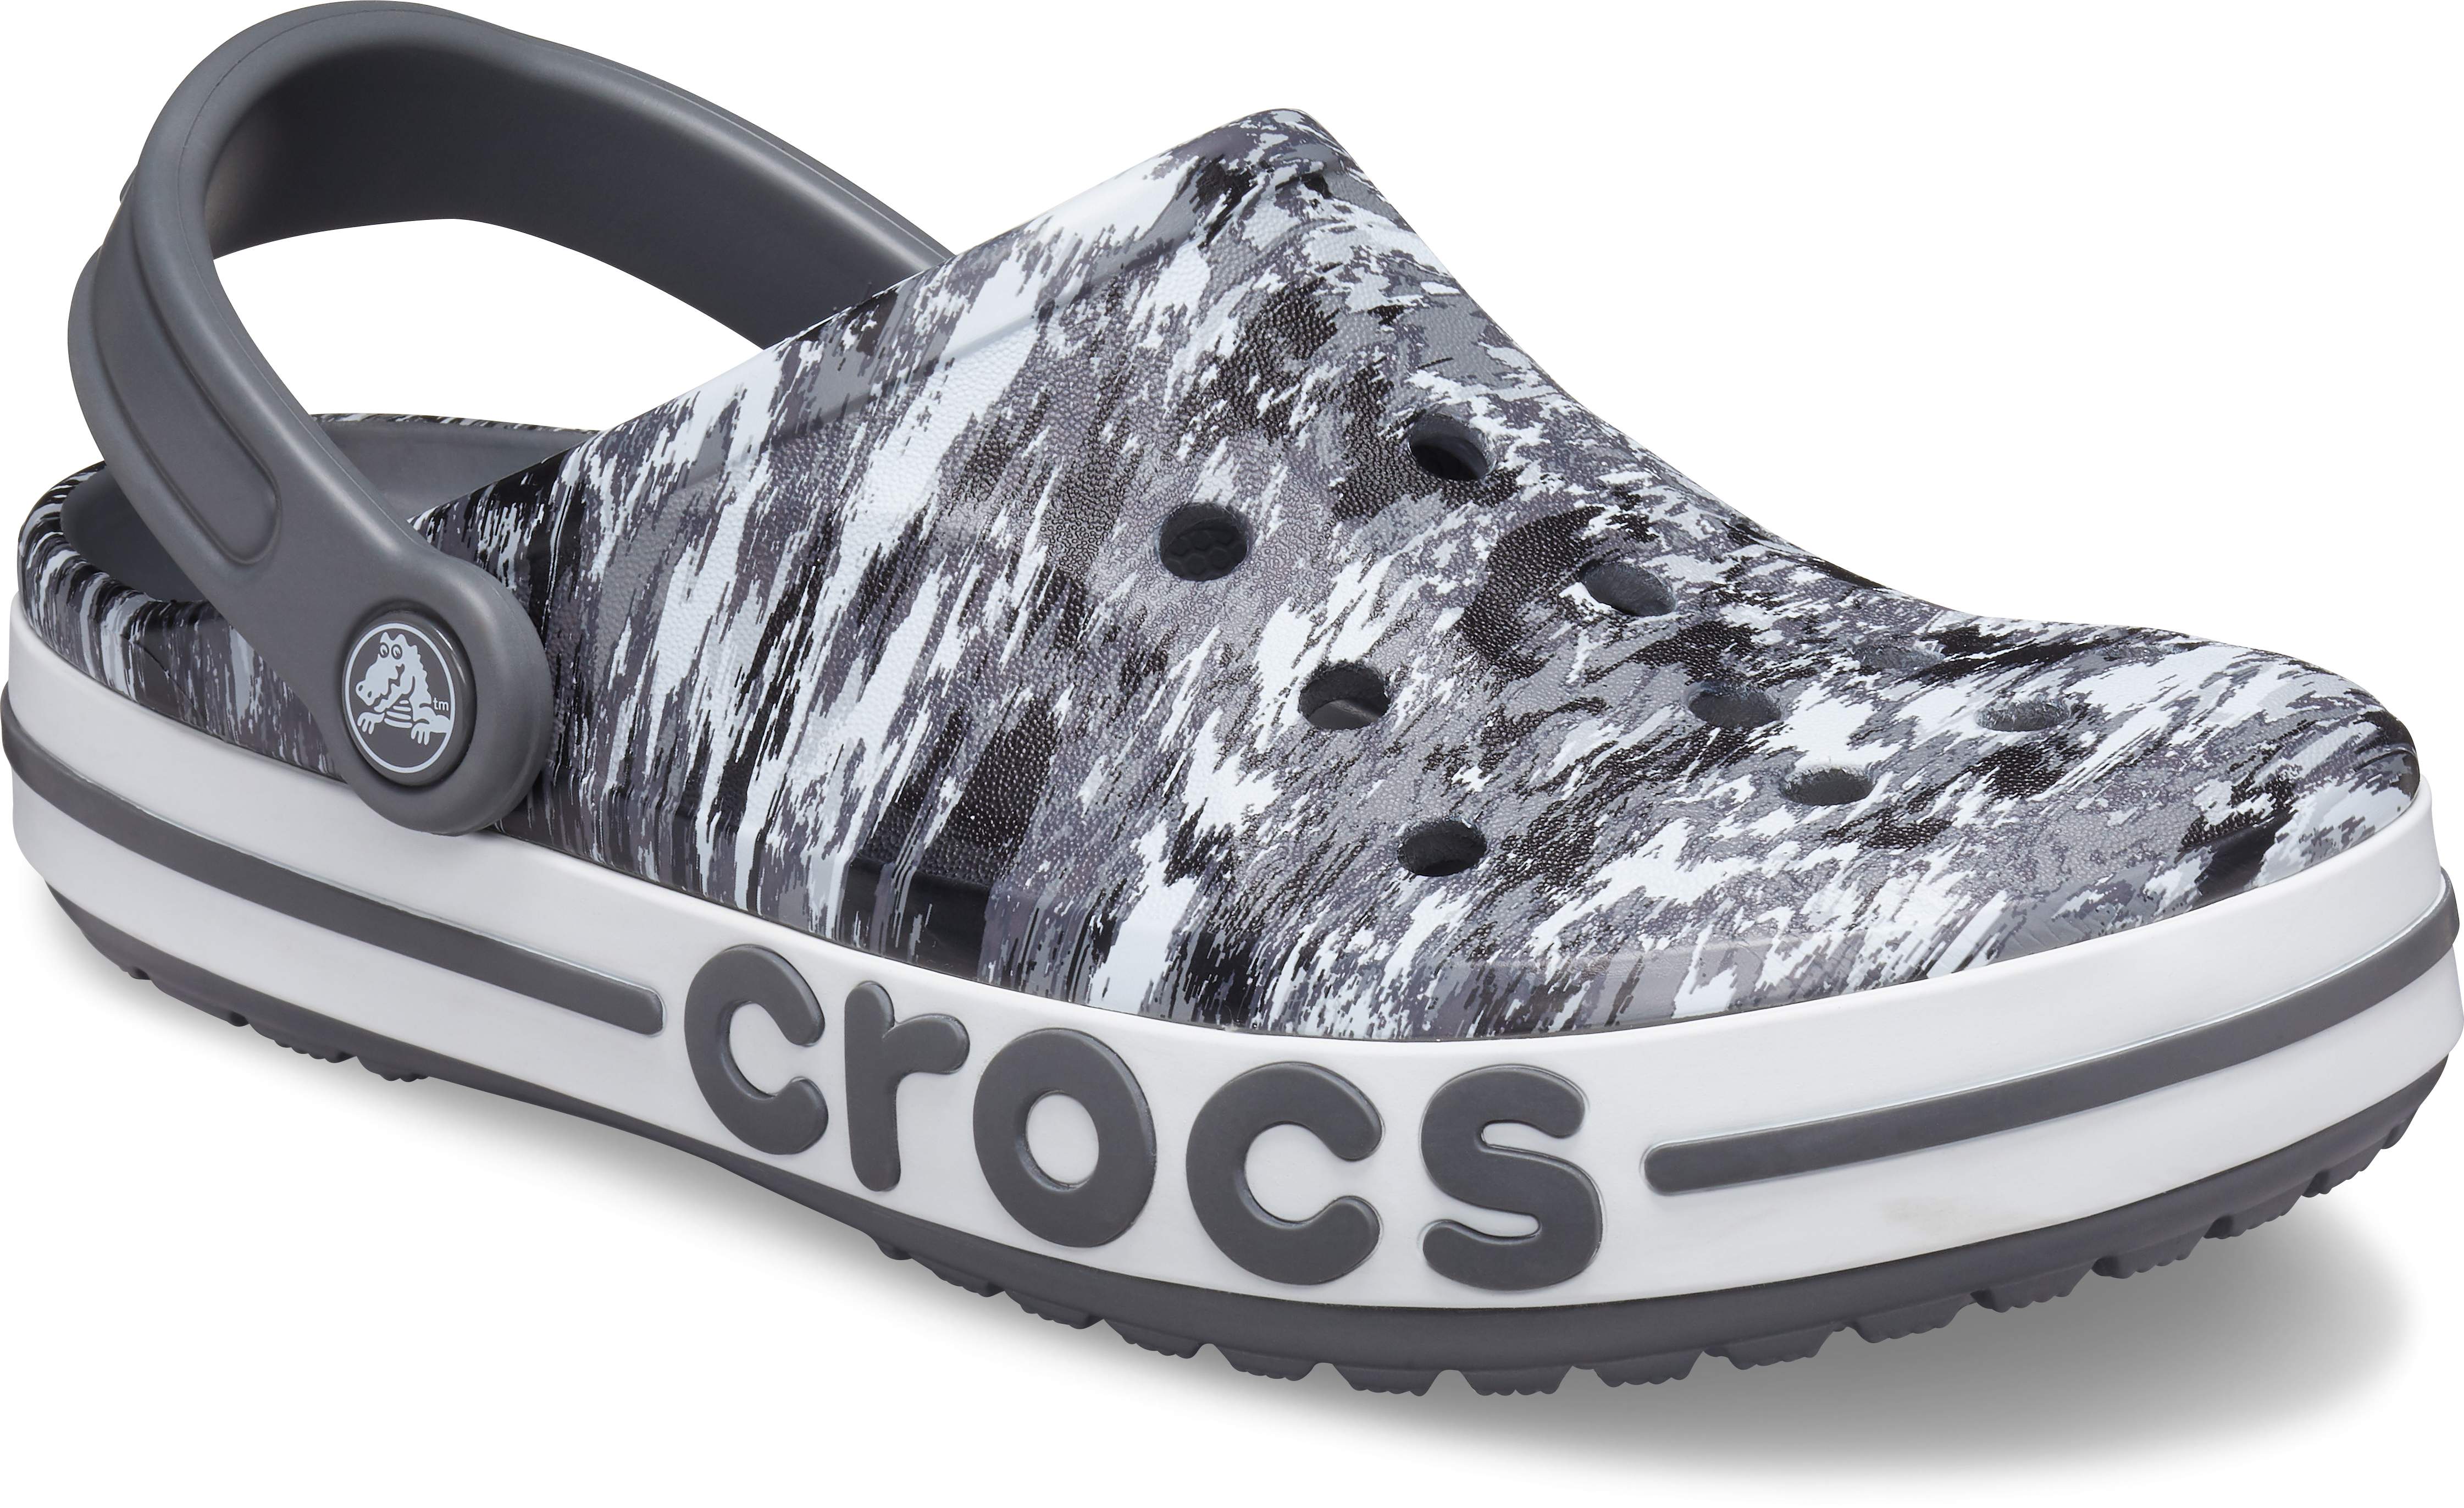 crocs baya band